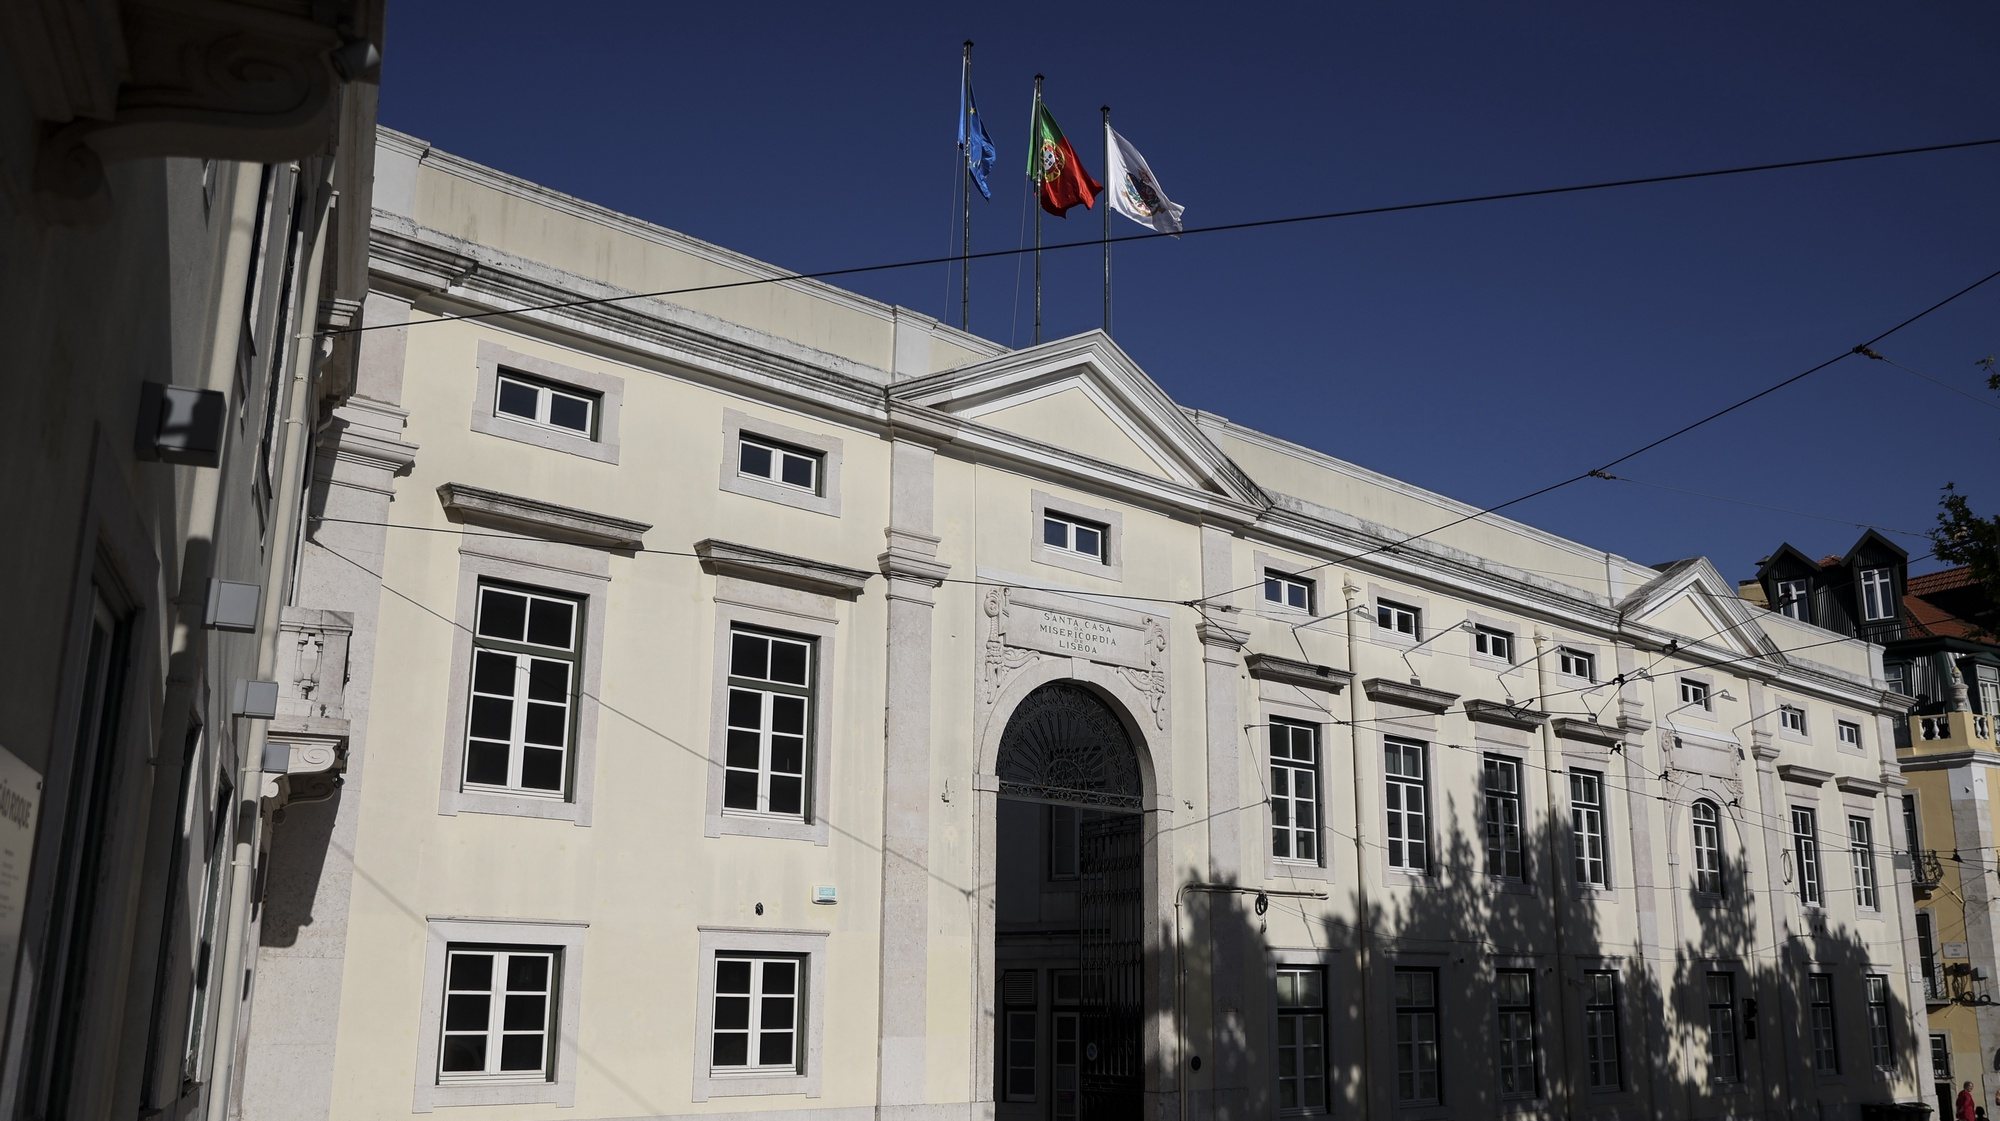 Fachada do edifício da Santa Casa da Misericórdia de Lisboa, 16 de abril de 2024. CARLOS M. ALMEIDA/LUSA